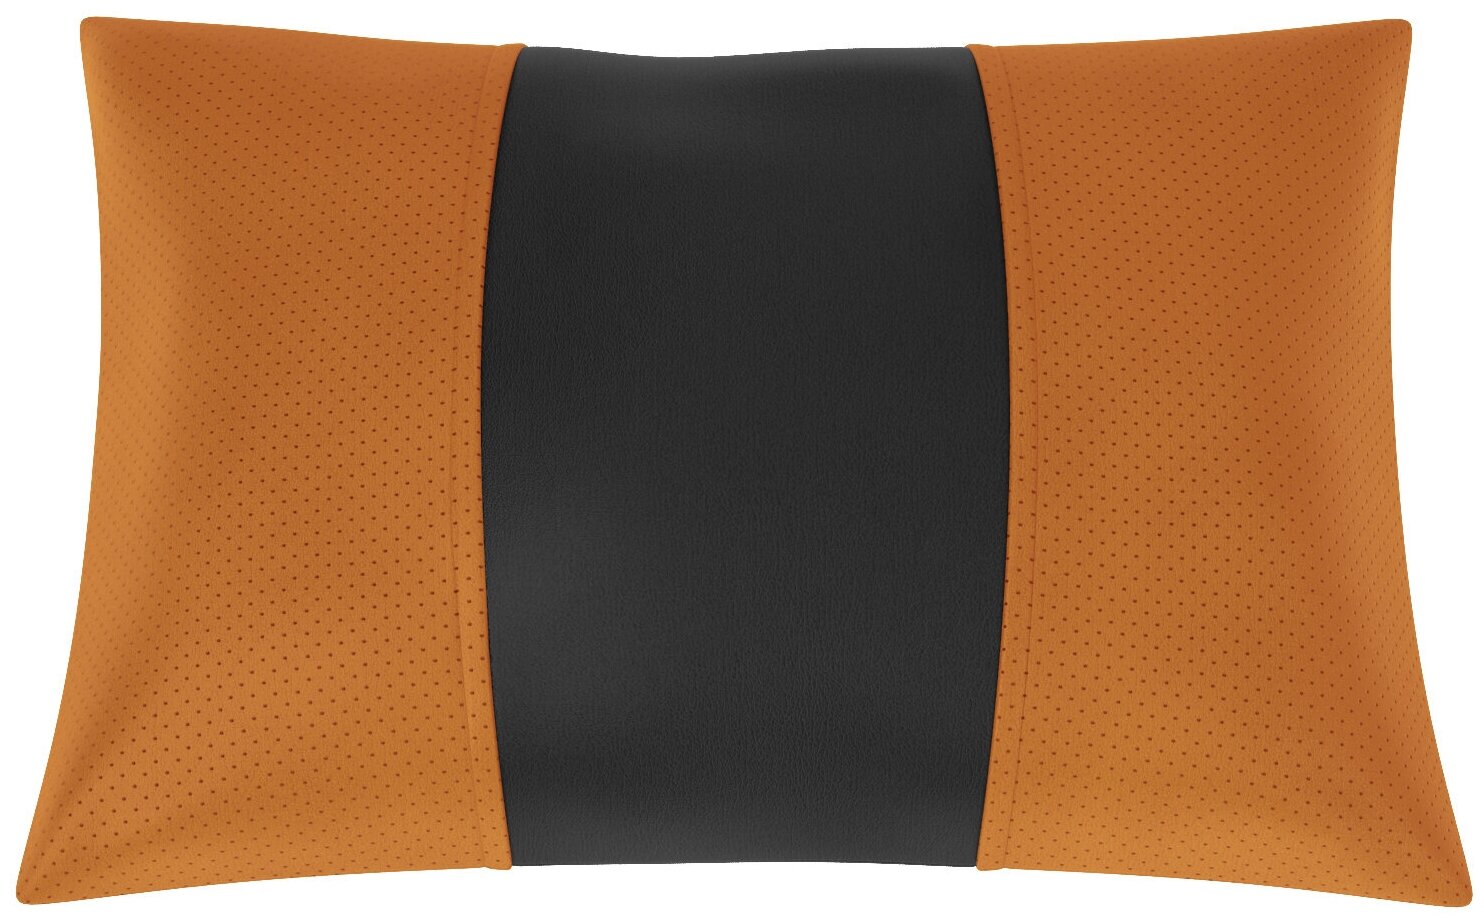 Автомобильная подушка для Nissan Juke (Ниссан Жук). Экокожа. Середина: чёрная гладкая экокожа. Боковины: оранжевая экокожа с перфорацией. 1 шт.